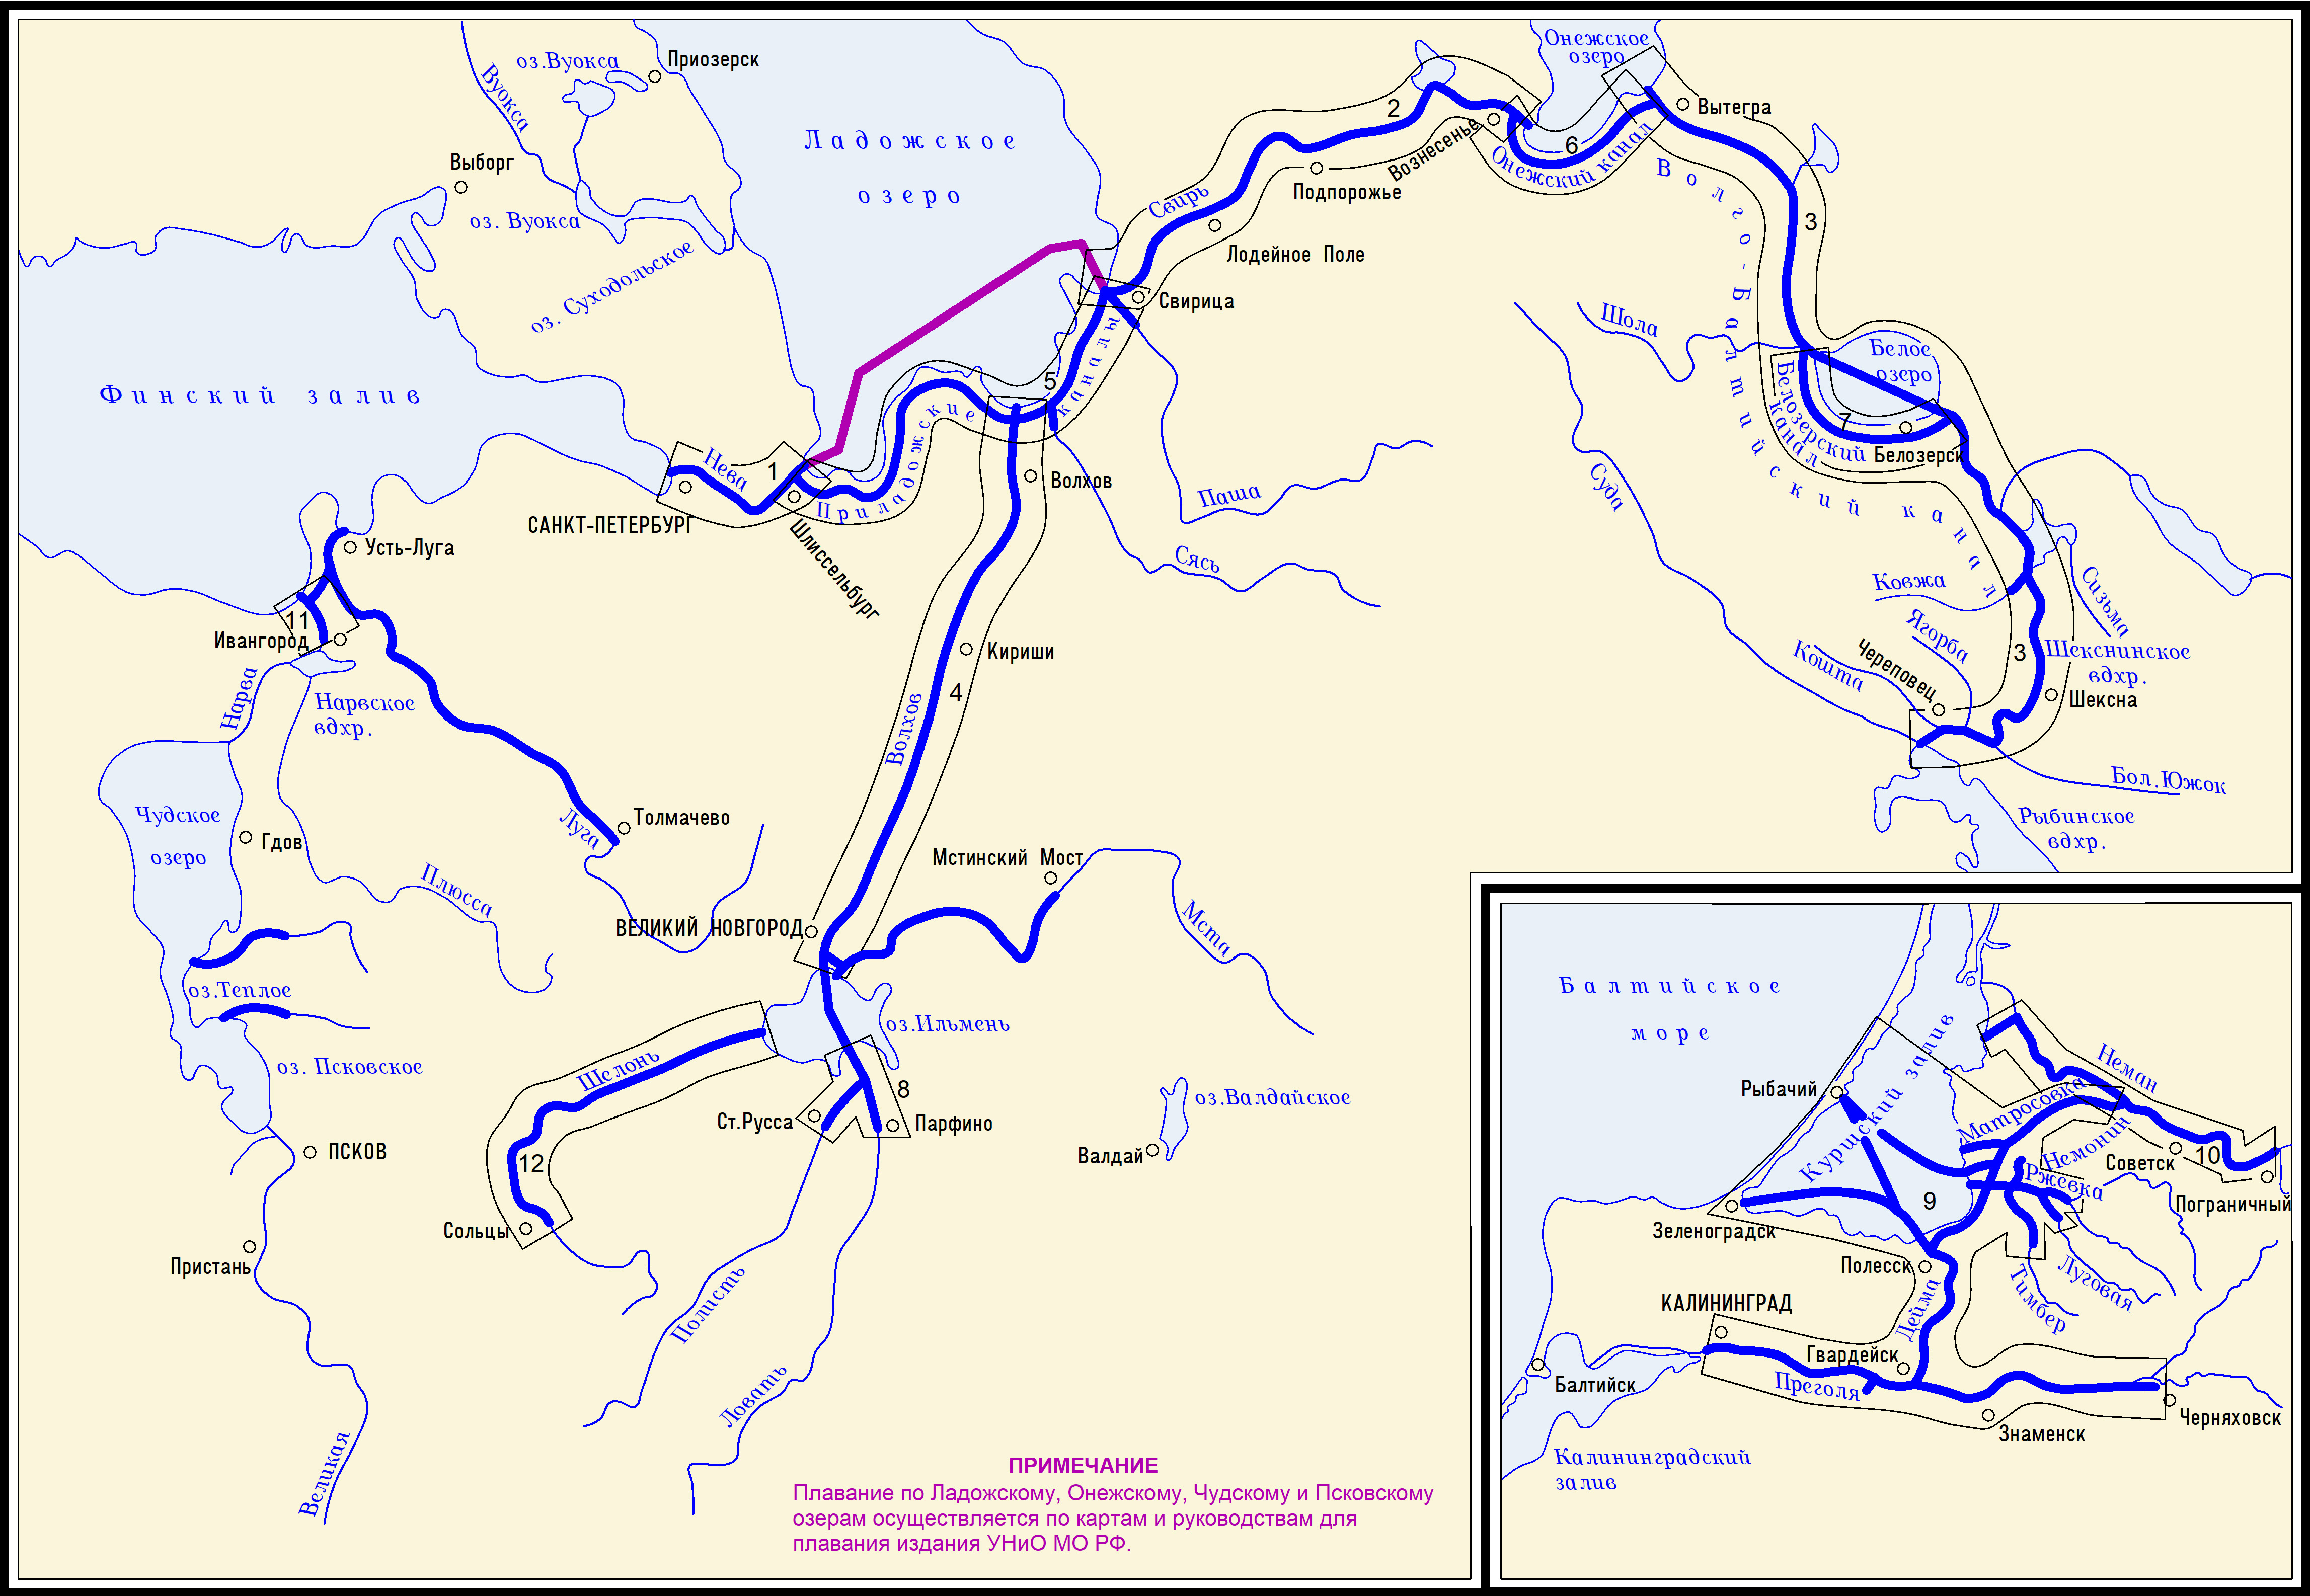 Волго-Балтийский канал на карте России